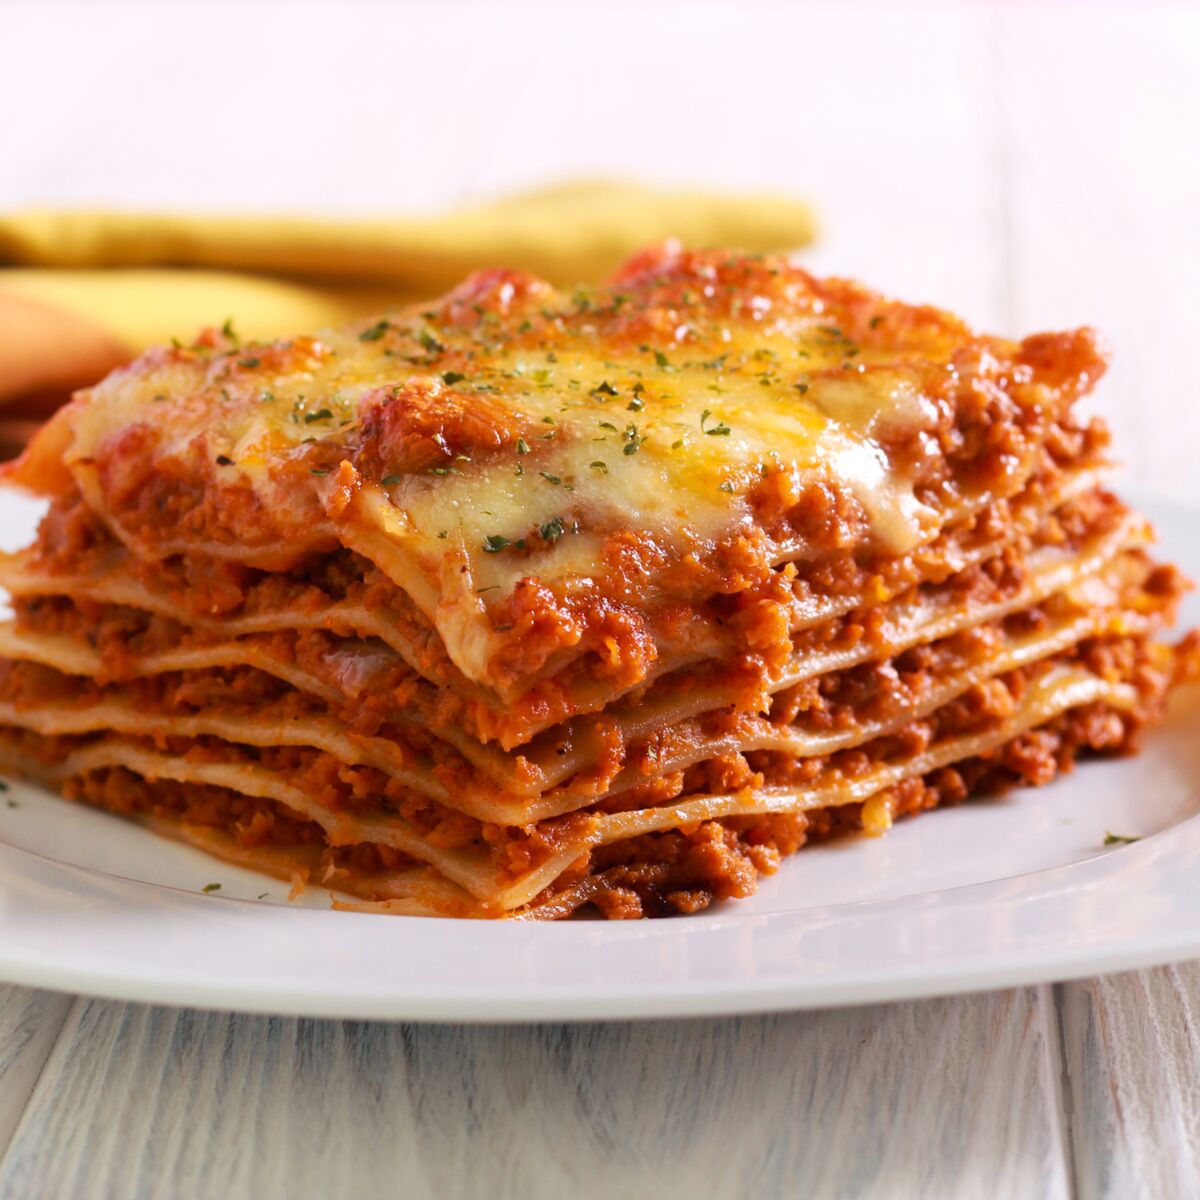 Lasagnes bolognaise : la meilleure recette